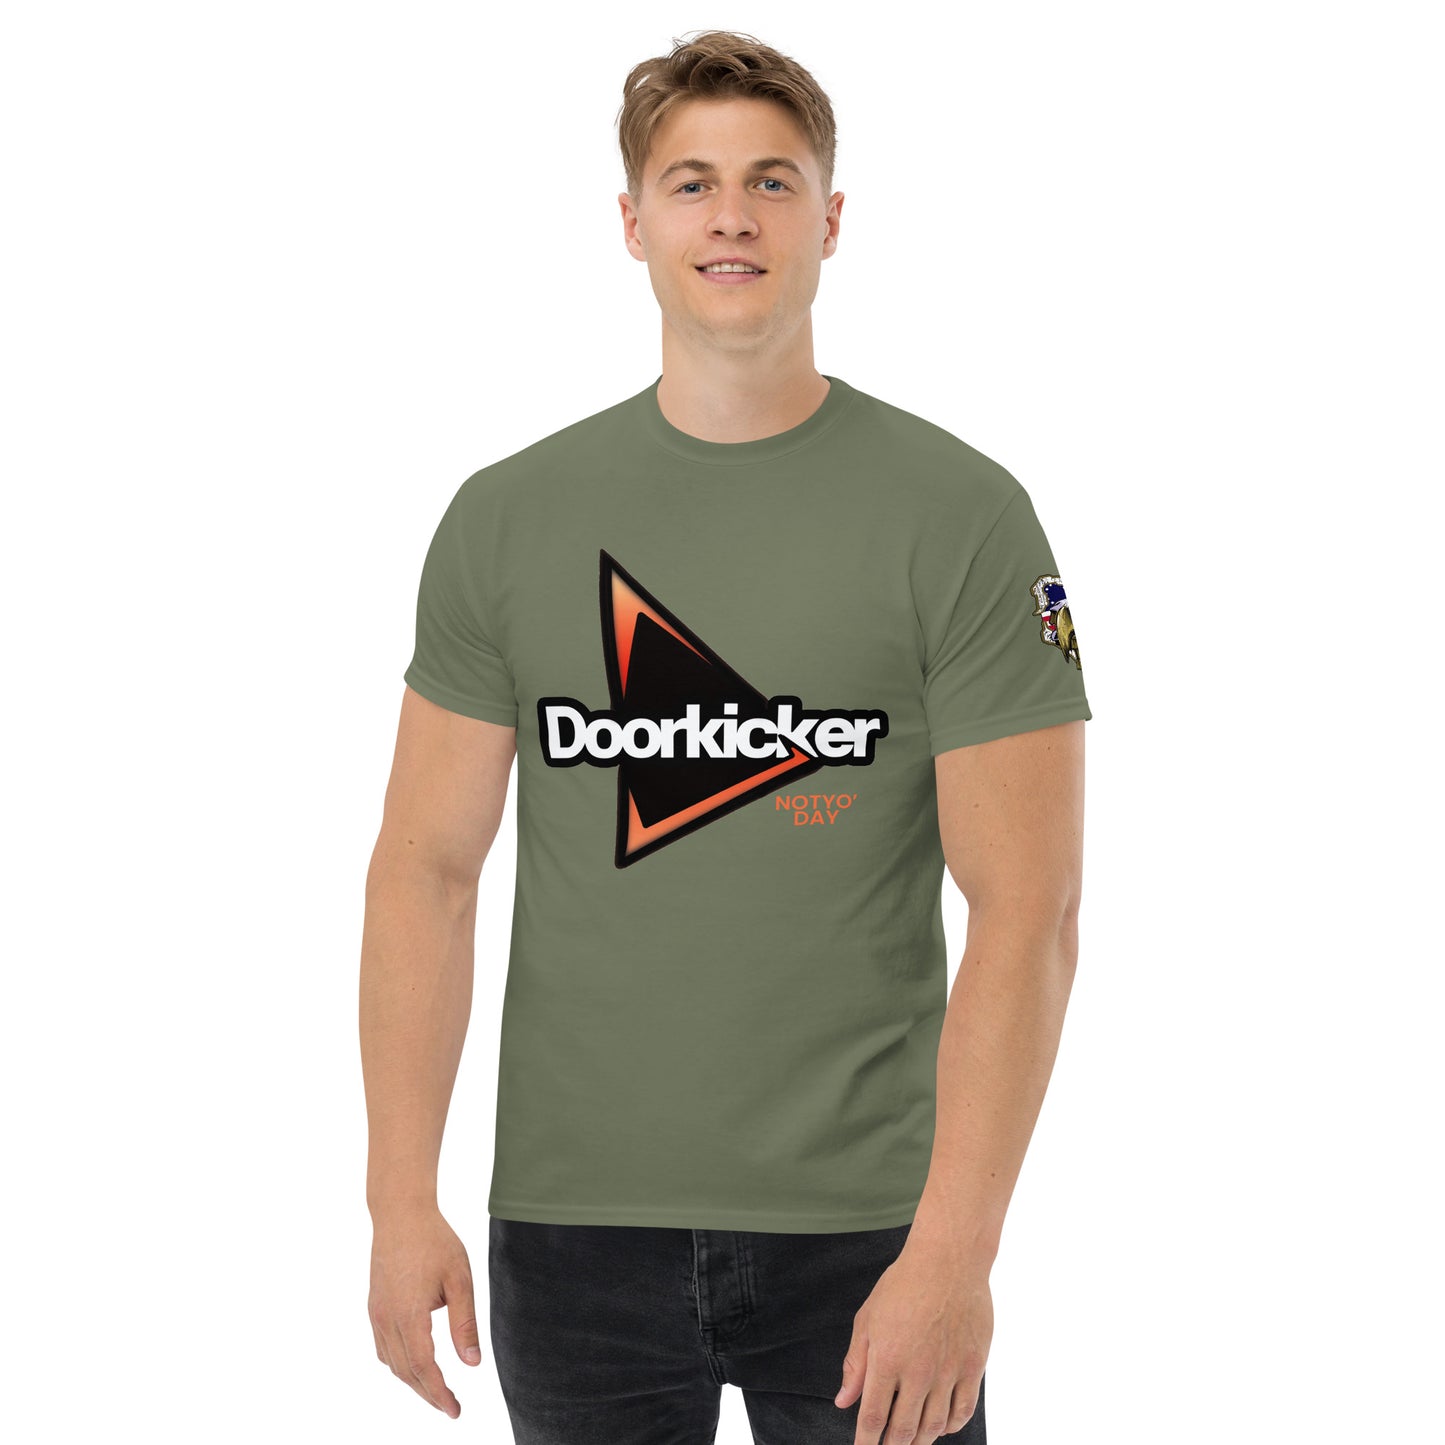 Doorkicker-Notyo’ Day